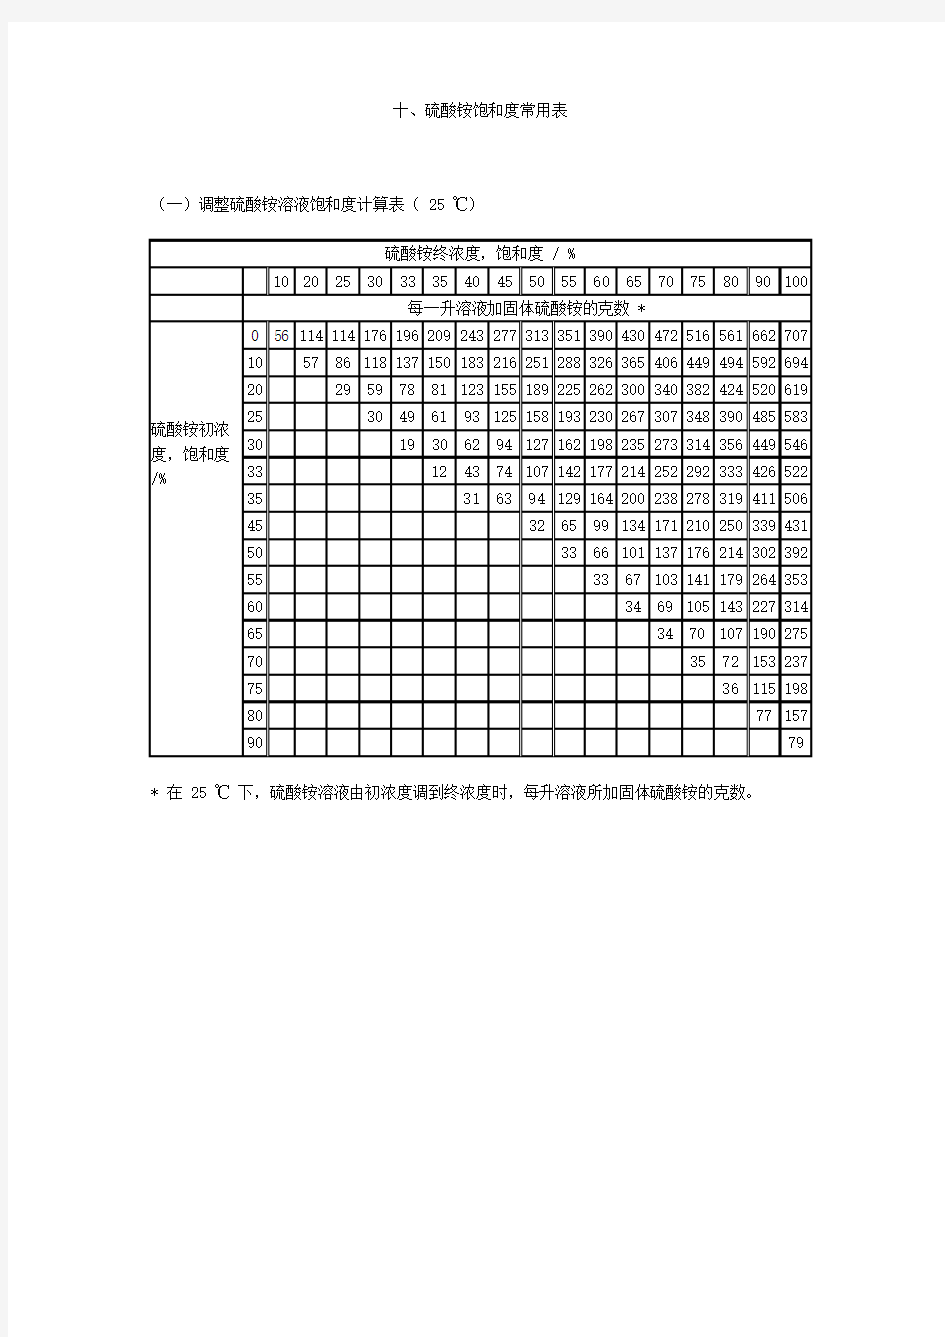 硫酸铵饱和度常用表